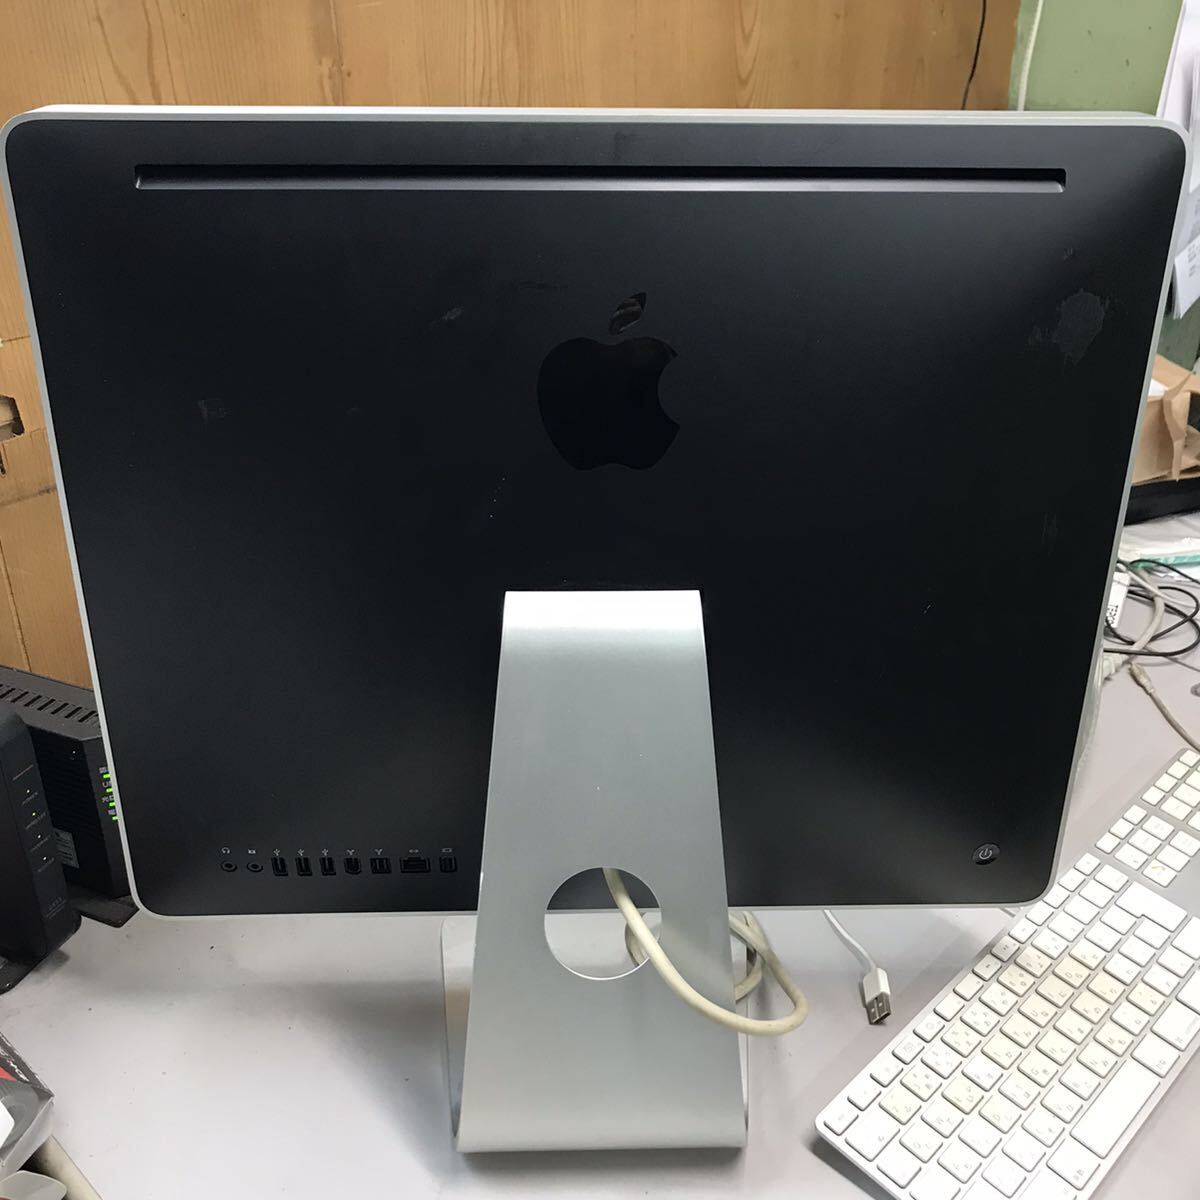 Apple アップル iMac モデルA1224 モニター デスクトップPC ジャンク品 電源 モニター起動済み キーボード A1243 動作未確認の画像4